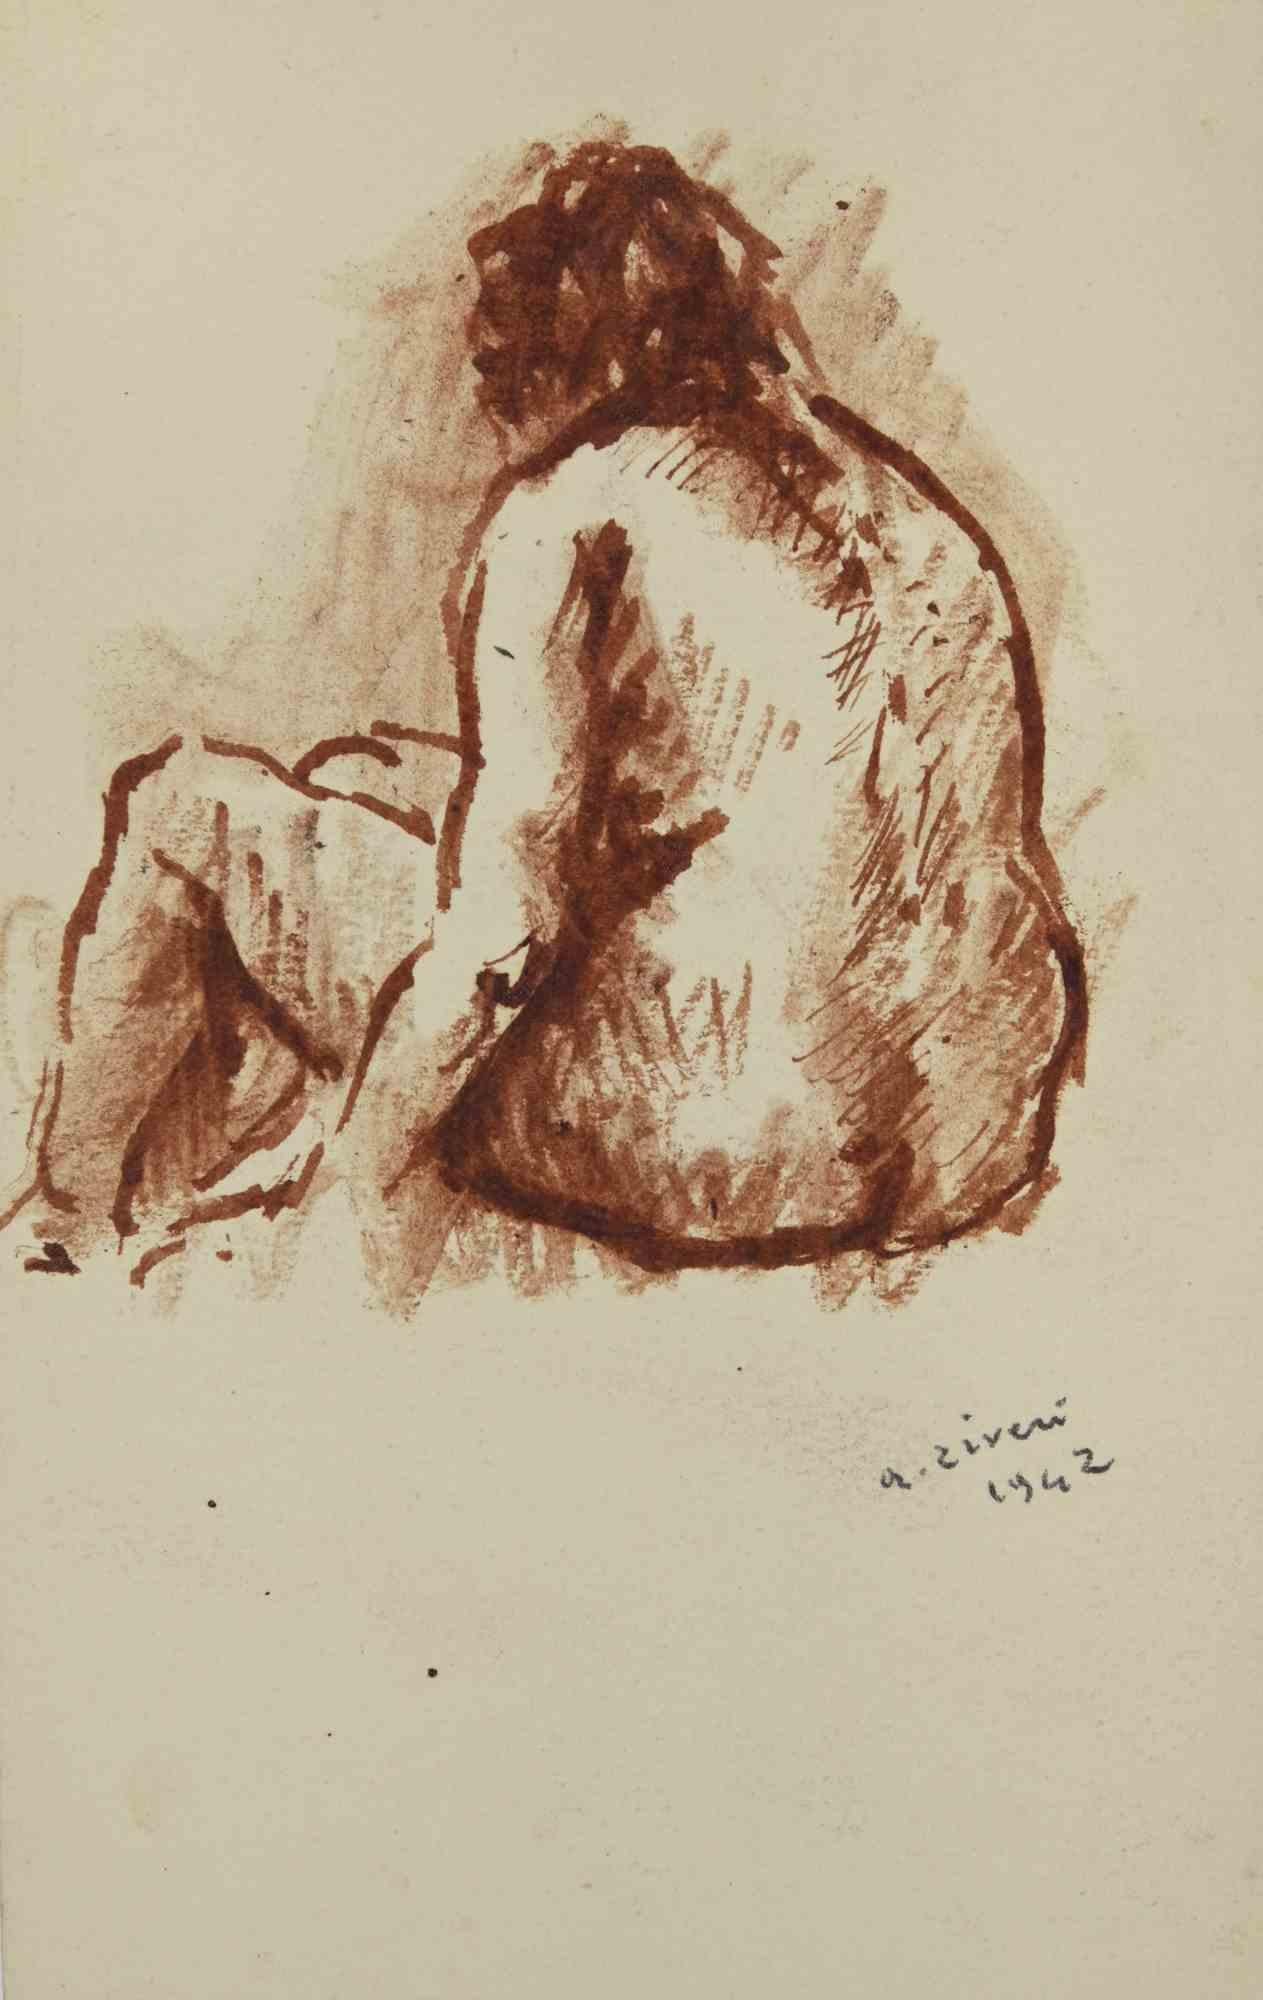 Der Akt – Zeichnung von Alberto Ziveri – 1942